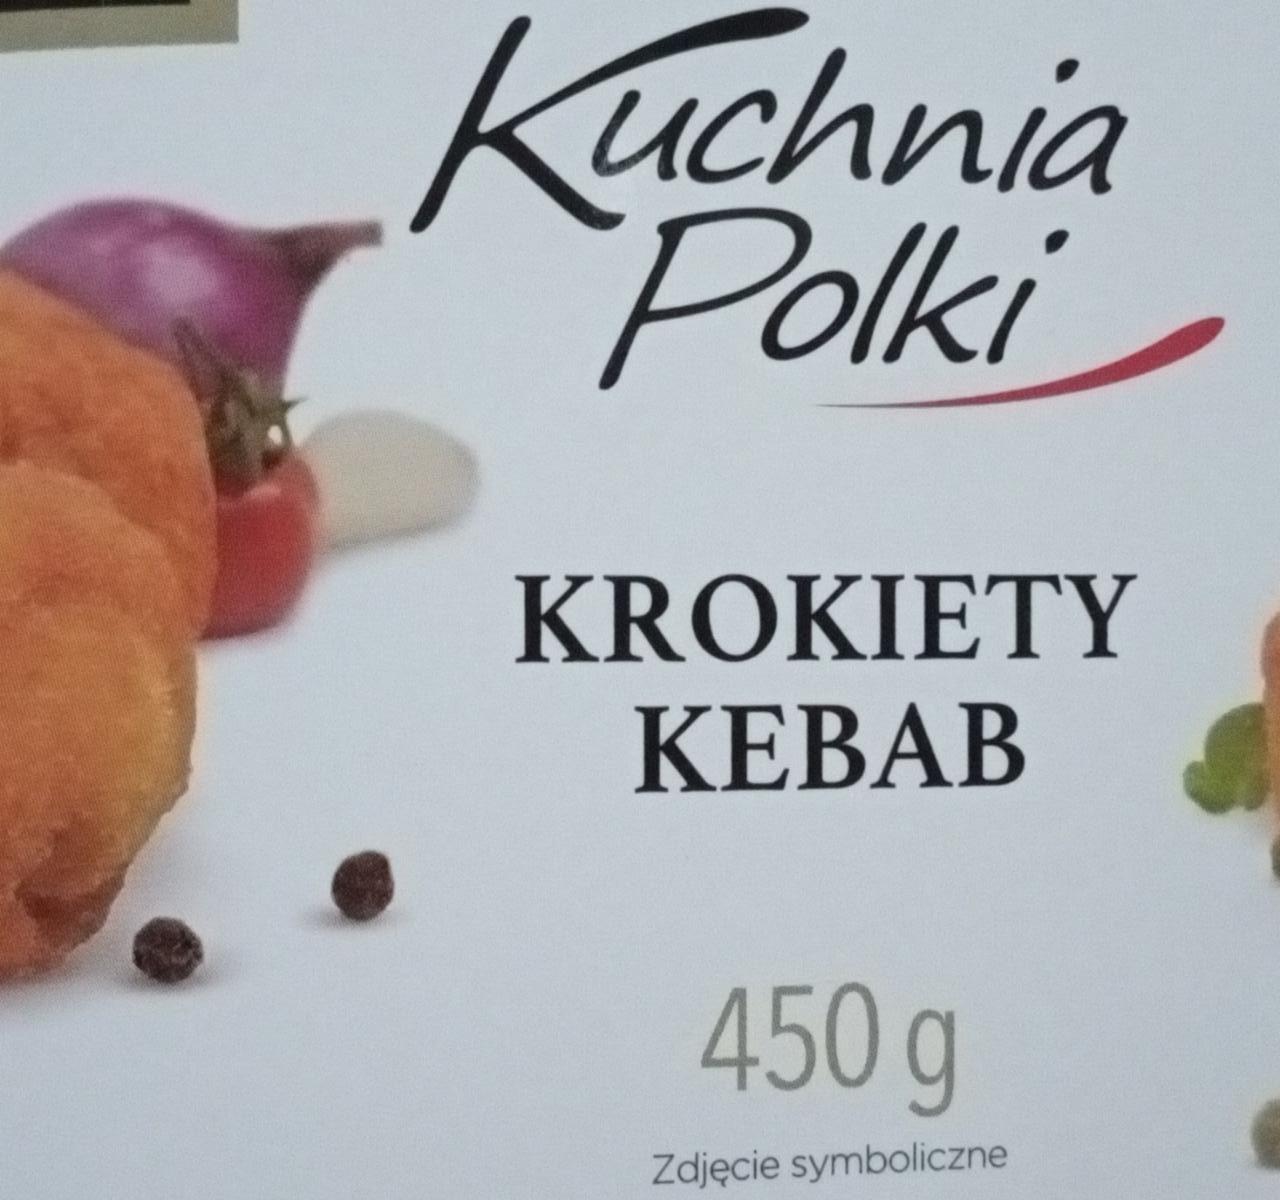 Zdjęcia - krokiety kebab Kuchnia polki